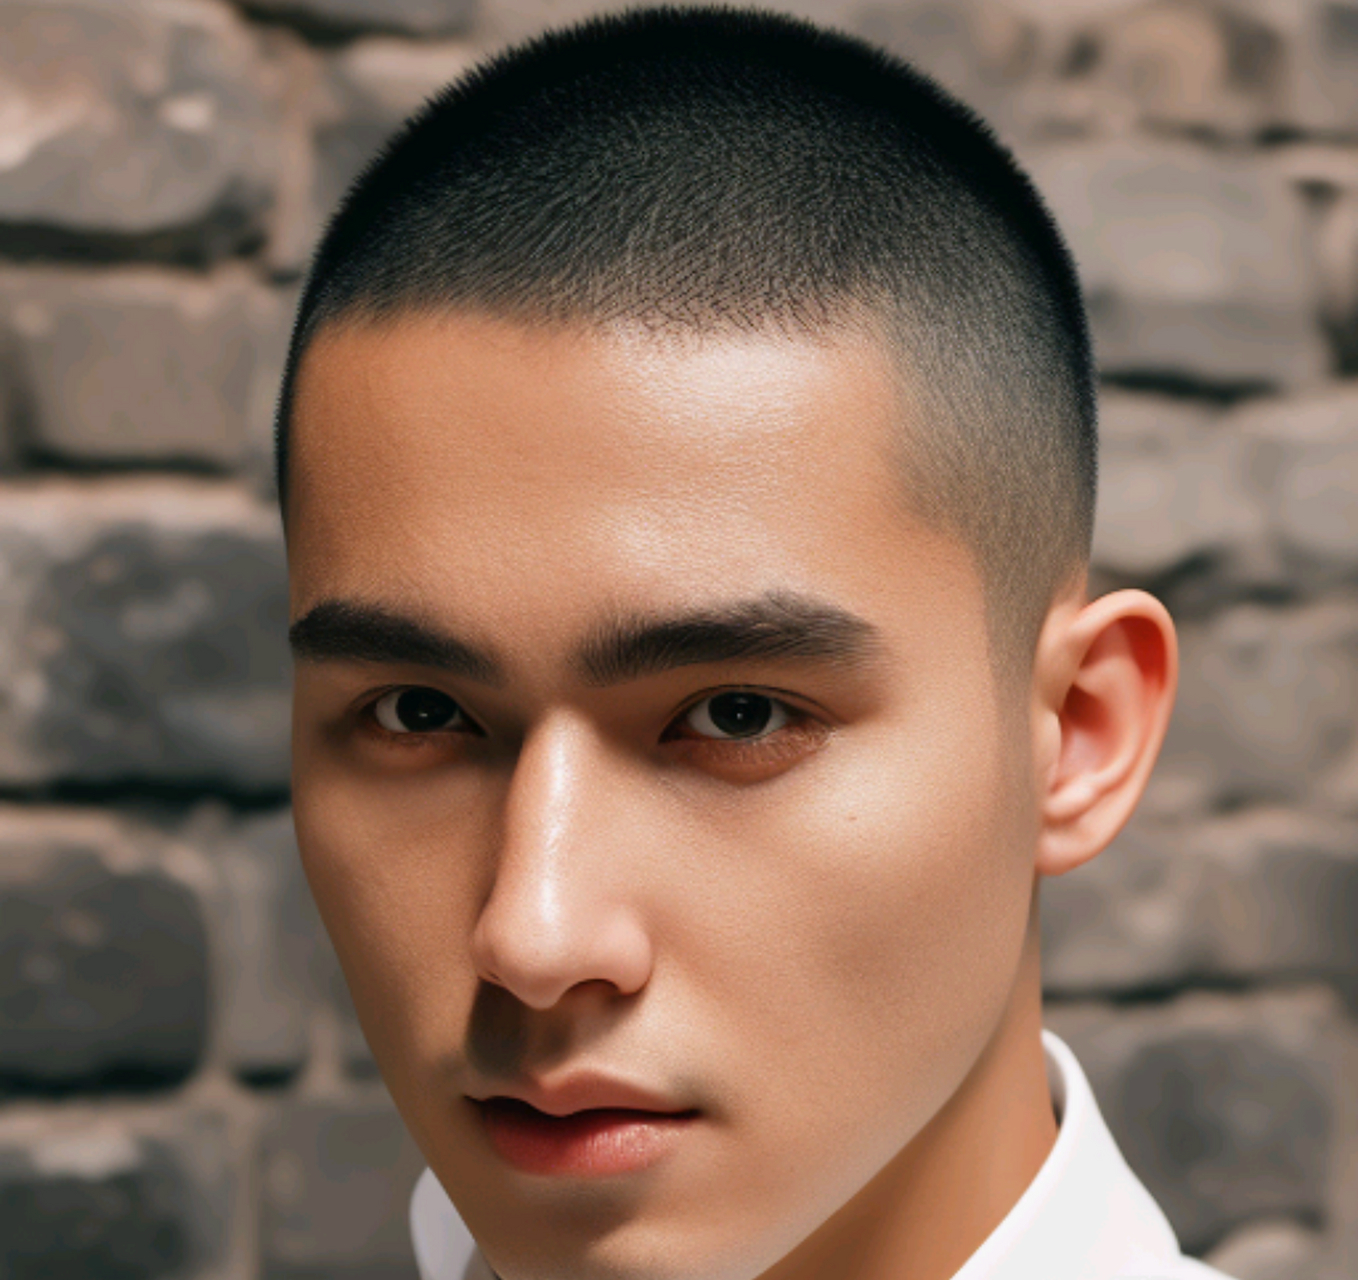 男士发型的介绍和特点:两侧铲短男士圆寸头,头顶的头发剪成圆润的弧度